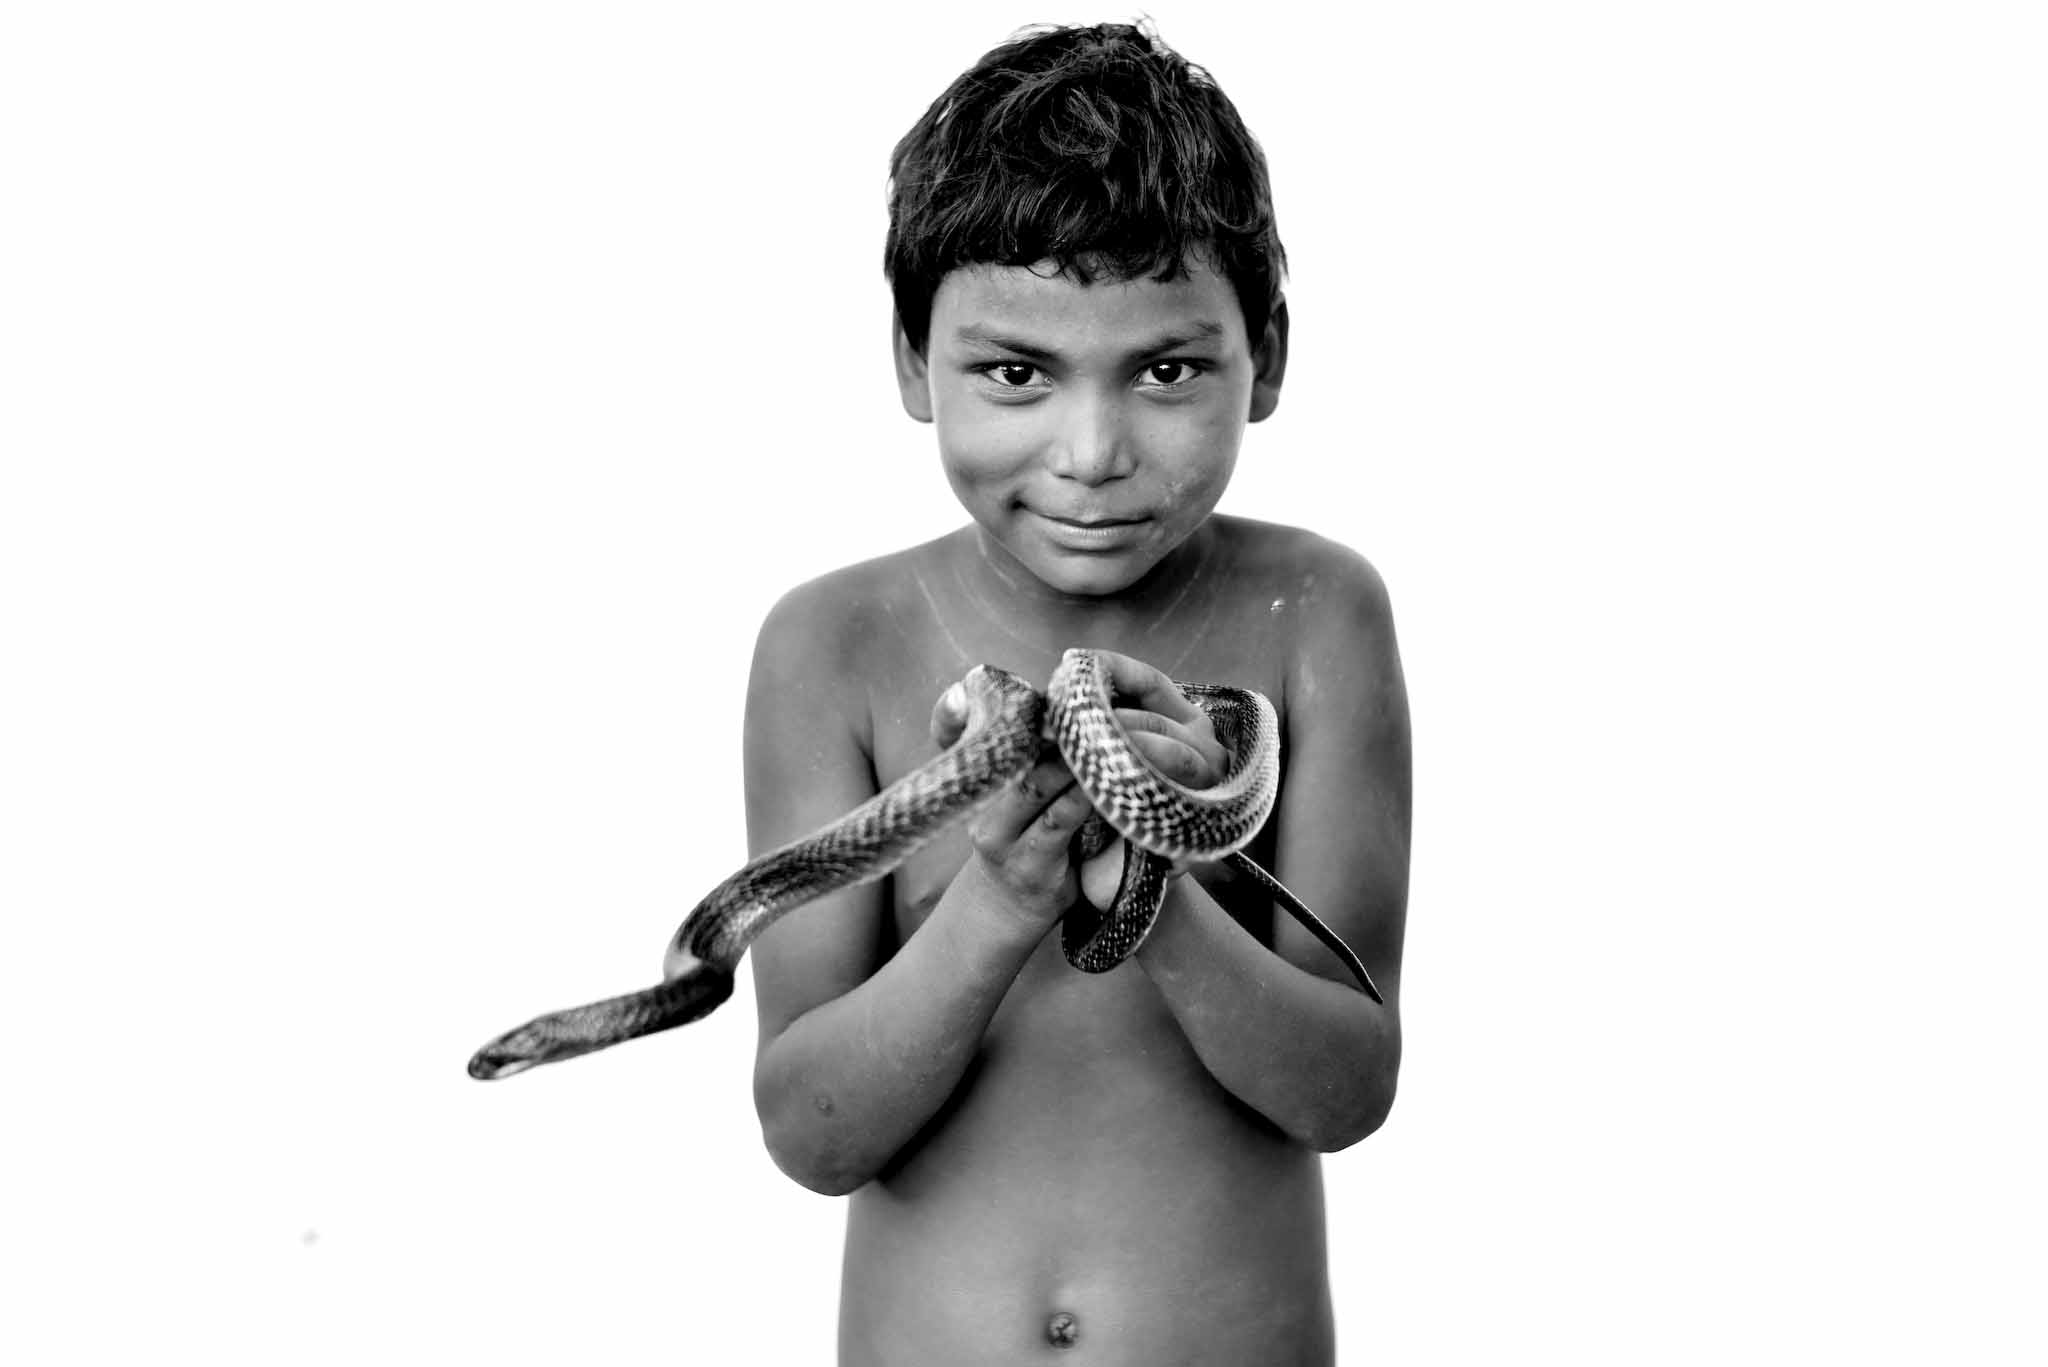 snake charmer, India, village, law, children